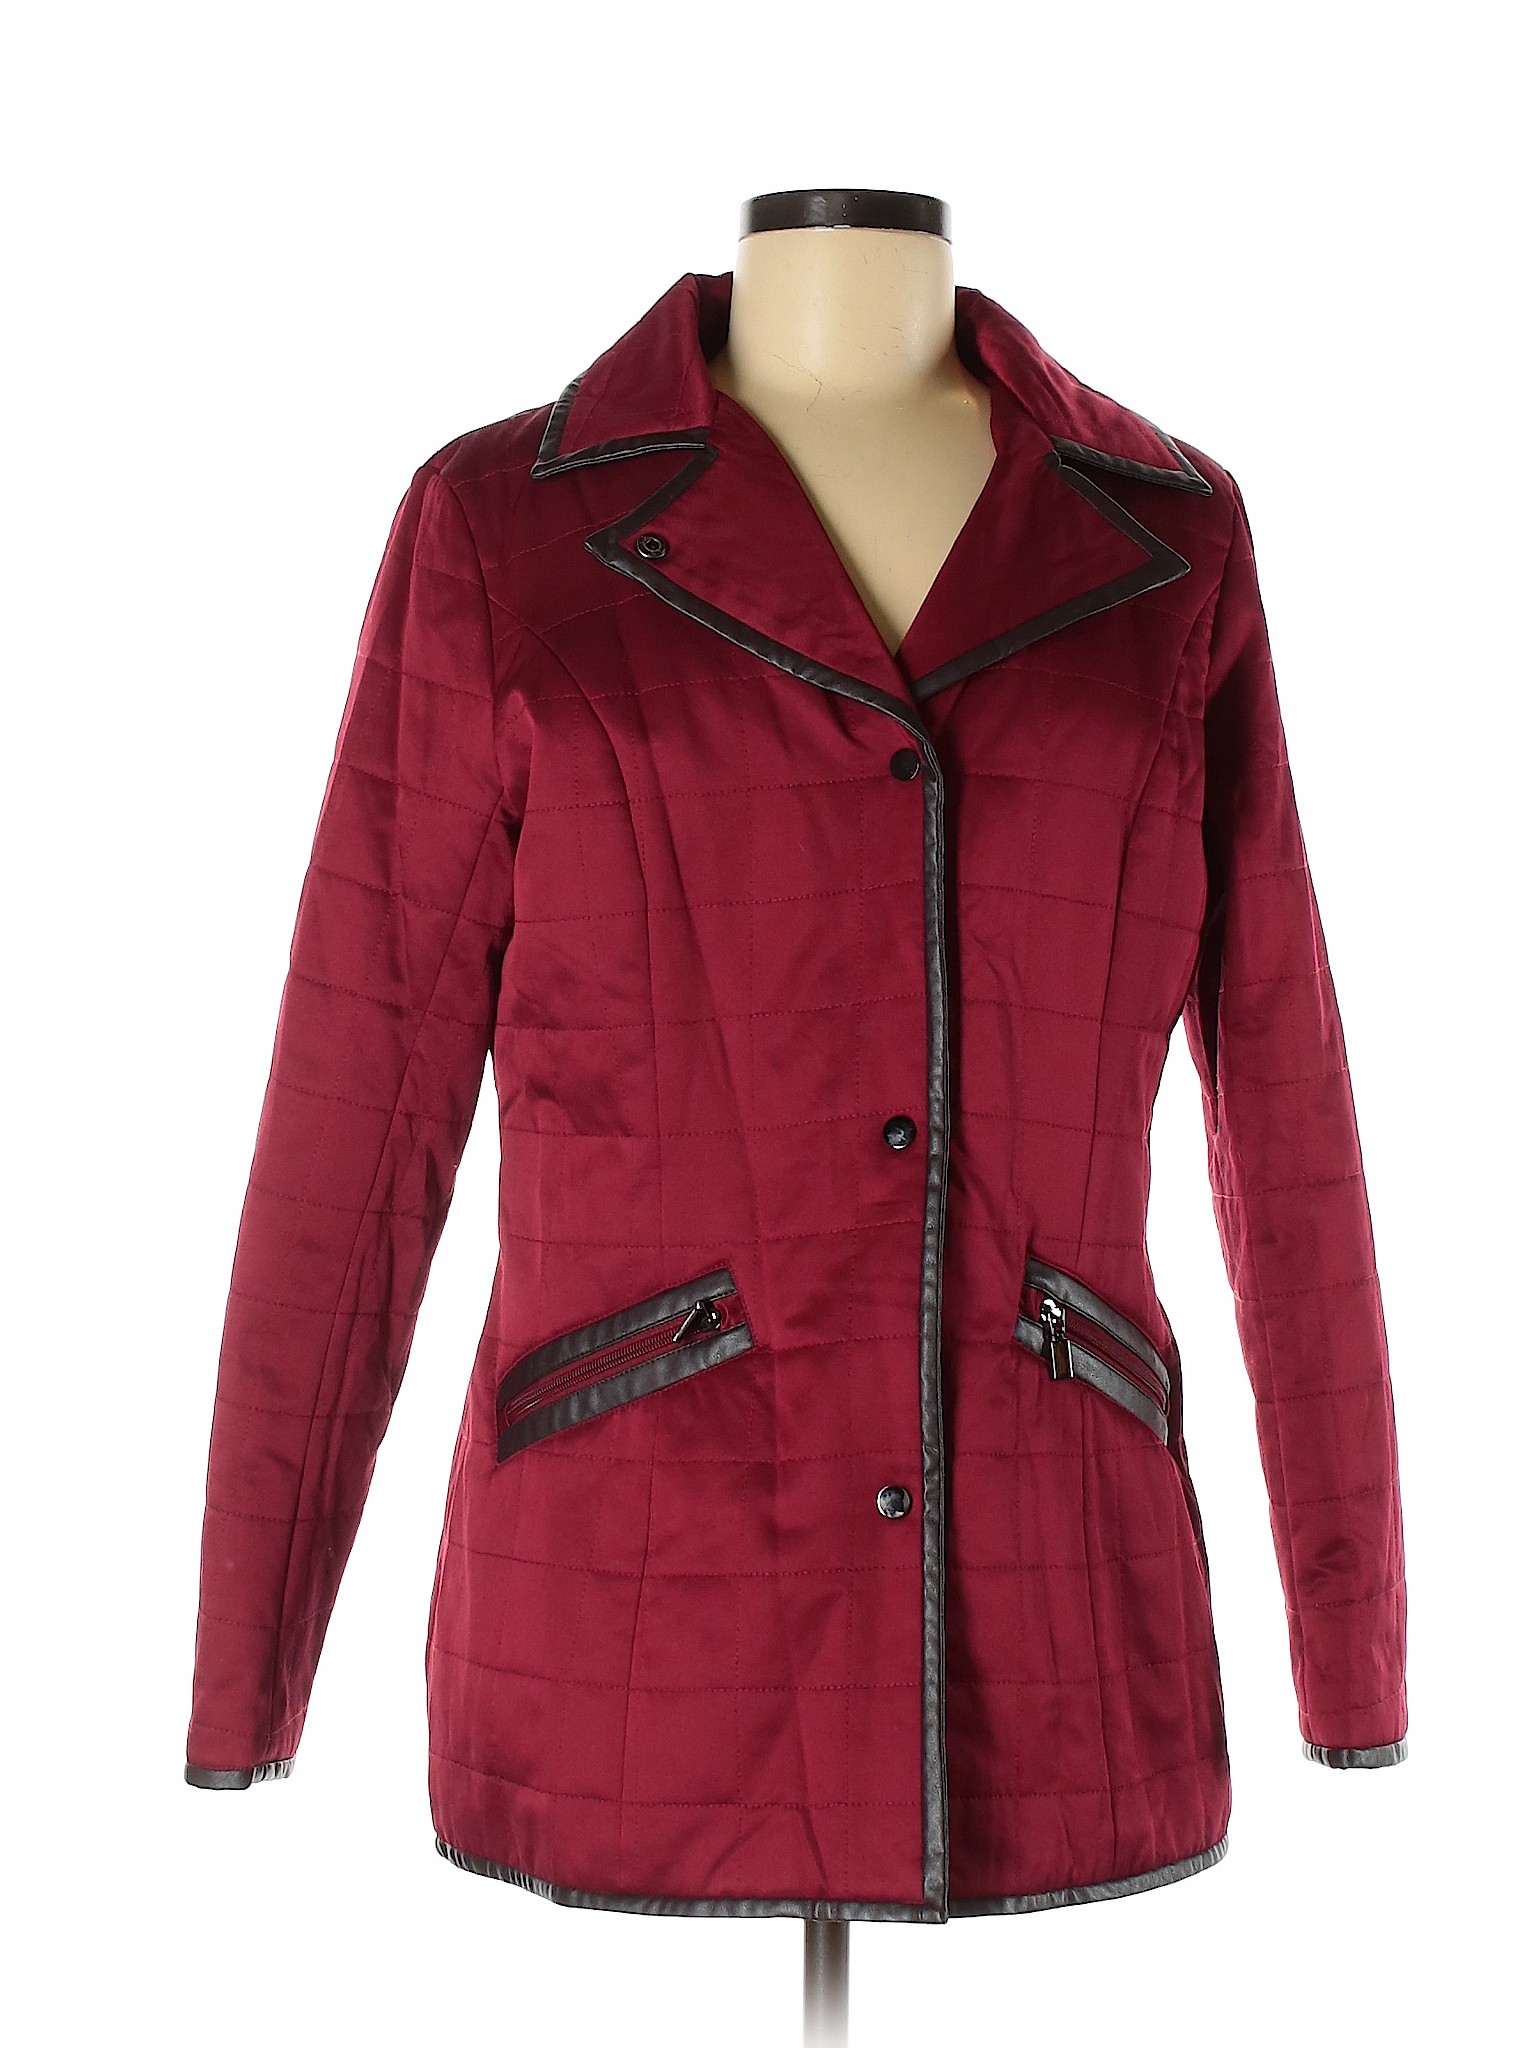 Pendleton Women Red Jacket M | eBay